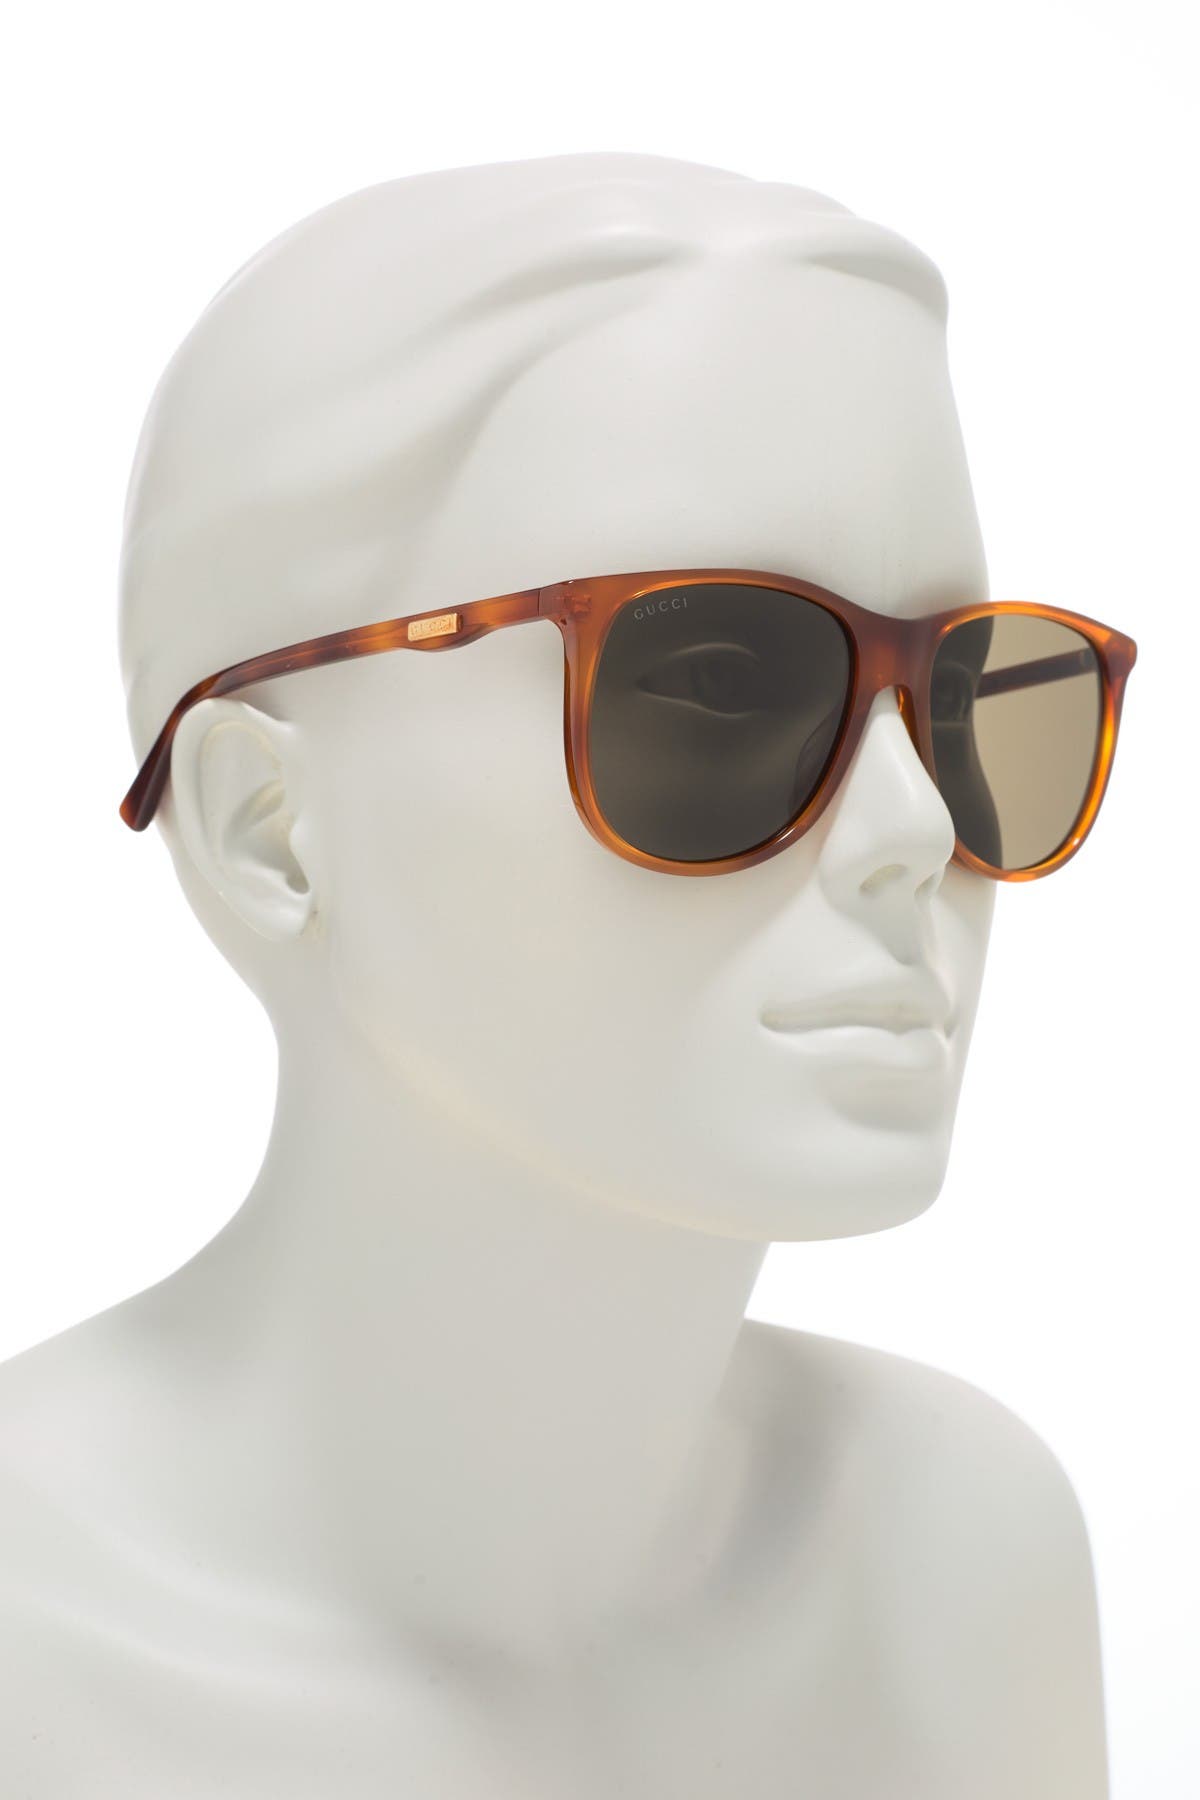 GUCCI | 57mm Square Sunglasses | HauteLook